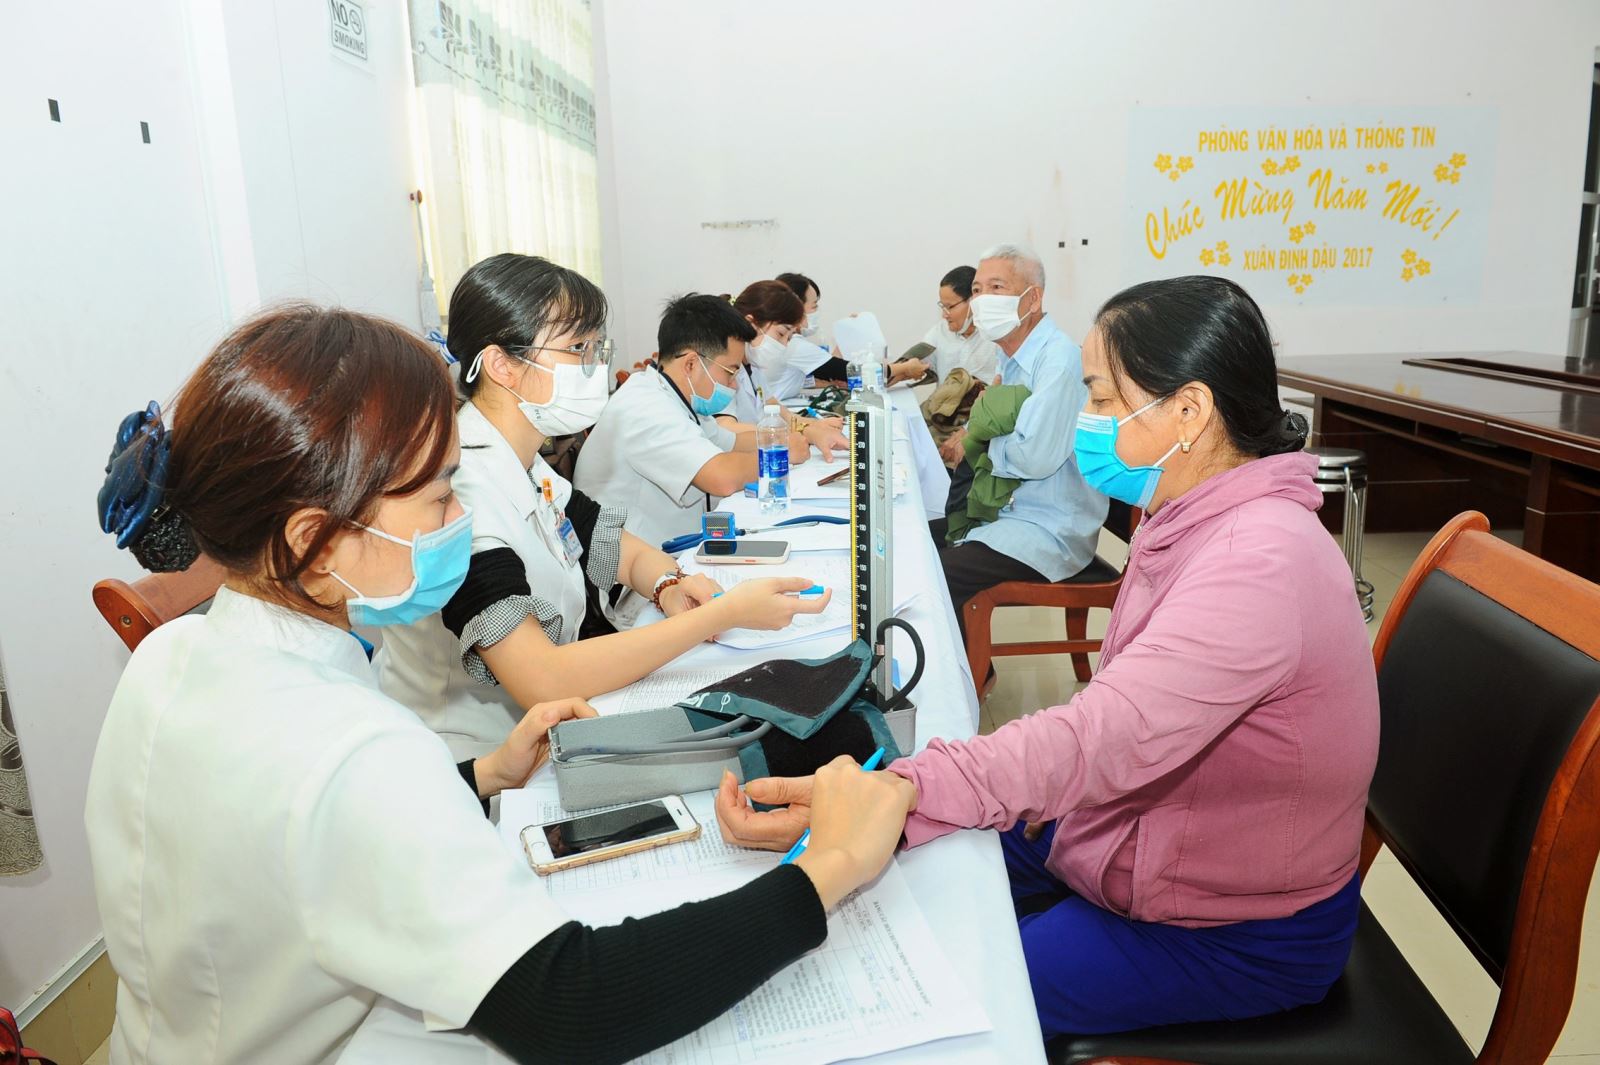 Ung thư phổi và các bệnh lý về phổi khác đang trở thành một trong những nguyên nhân hàng đầu gây tử vong tại Việt Nam và trên toàn thế giới. 